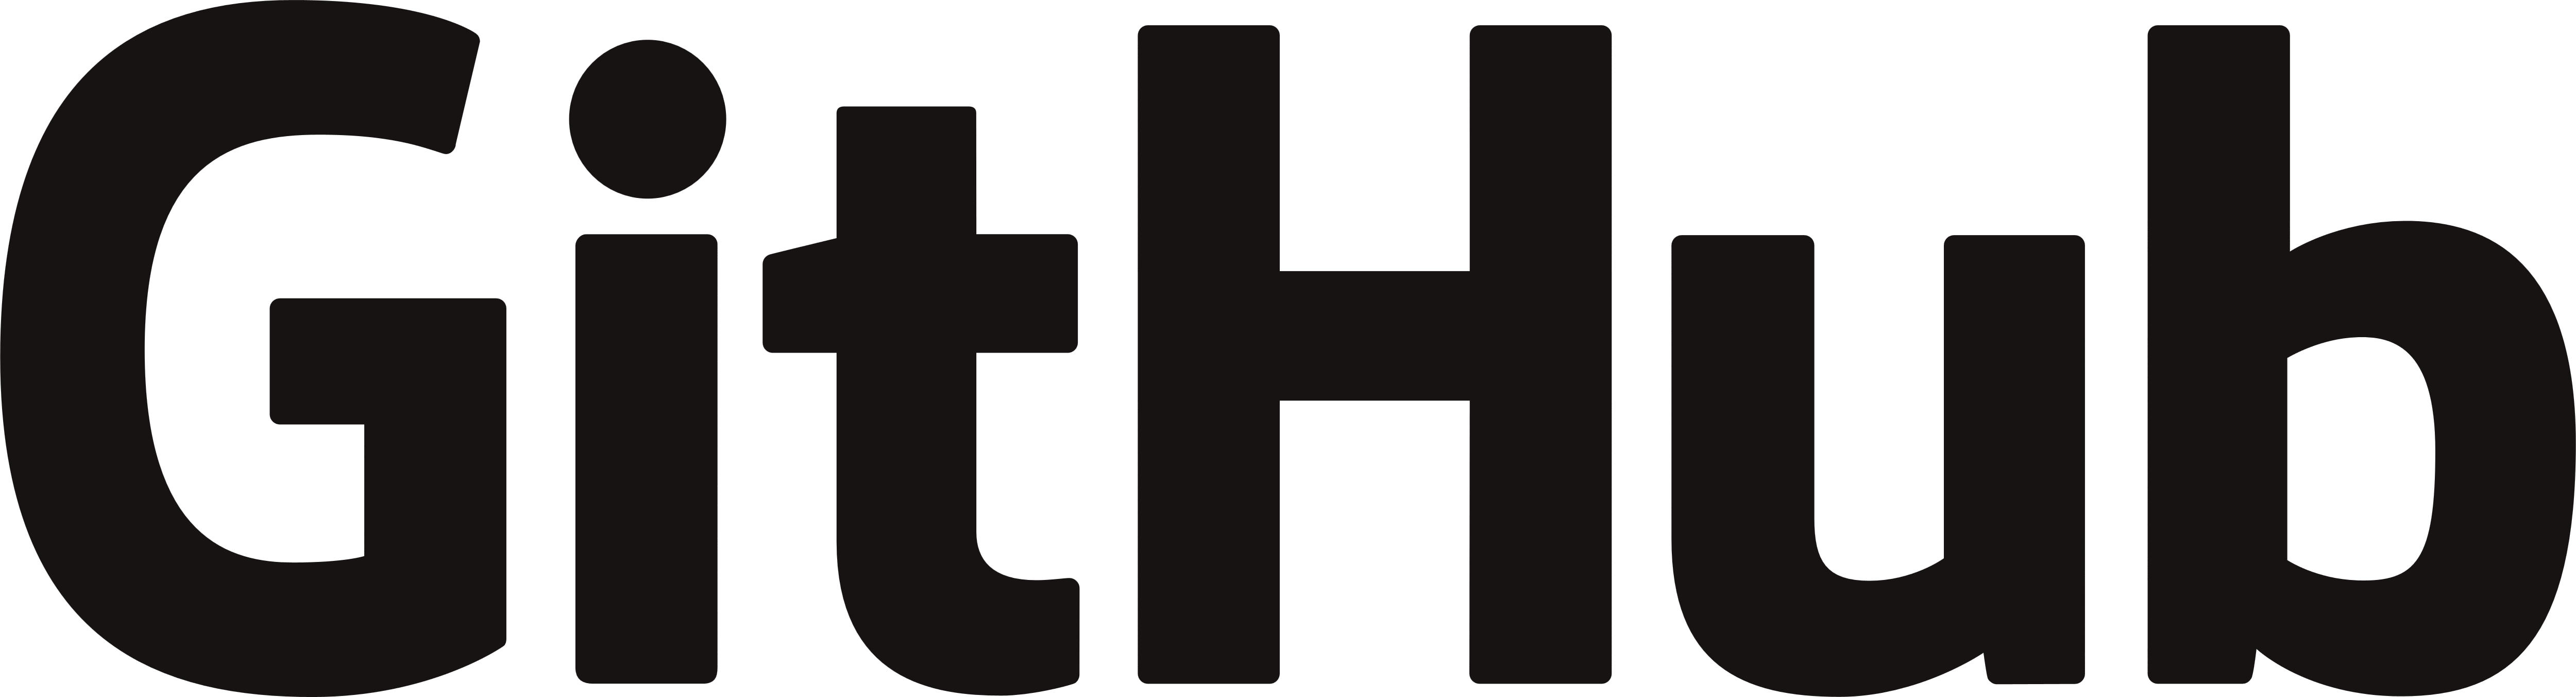 Github Logo PNG High-Quality Image